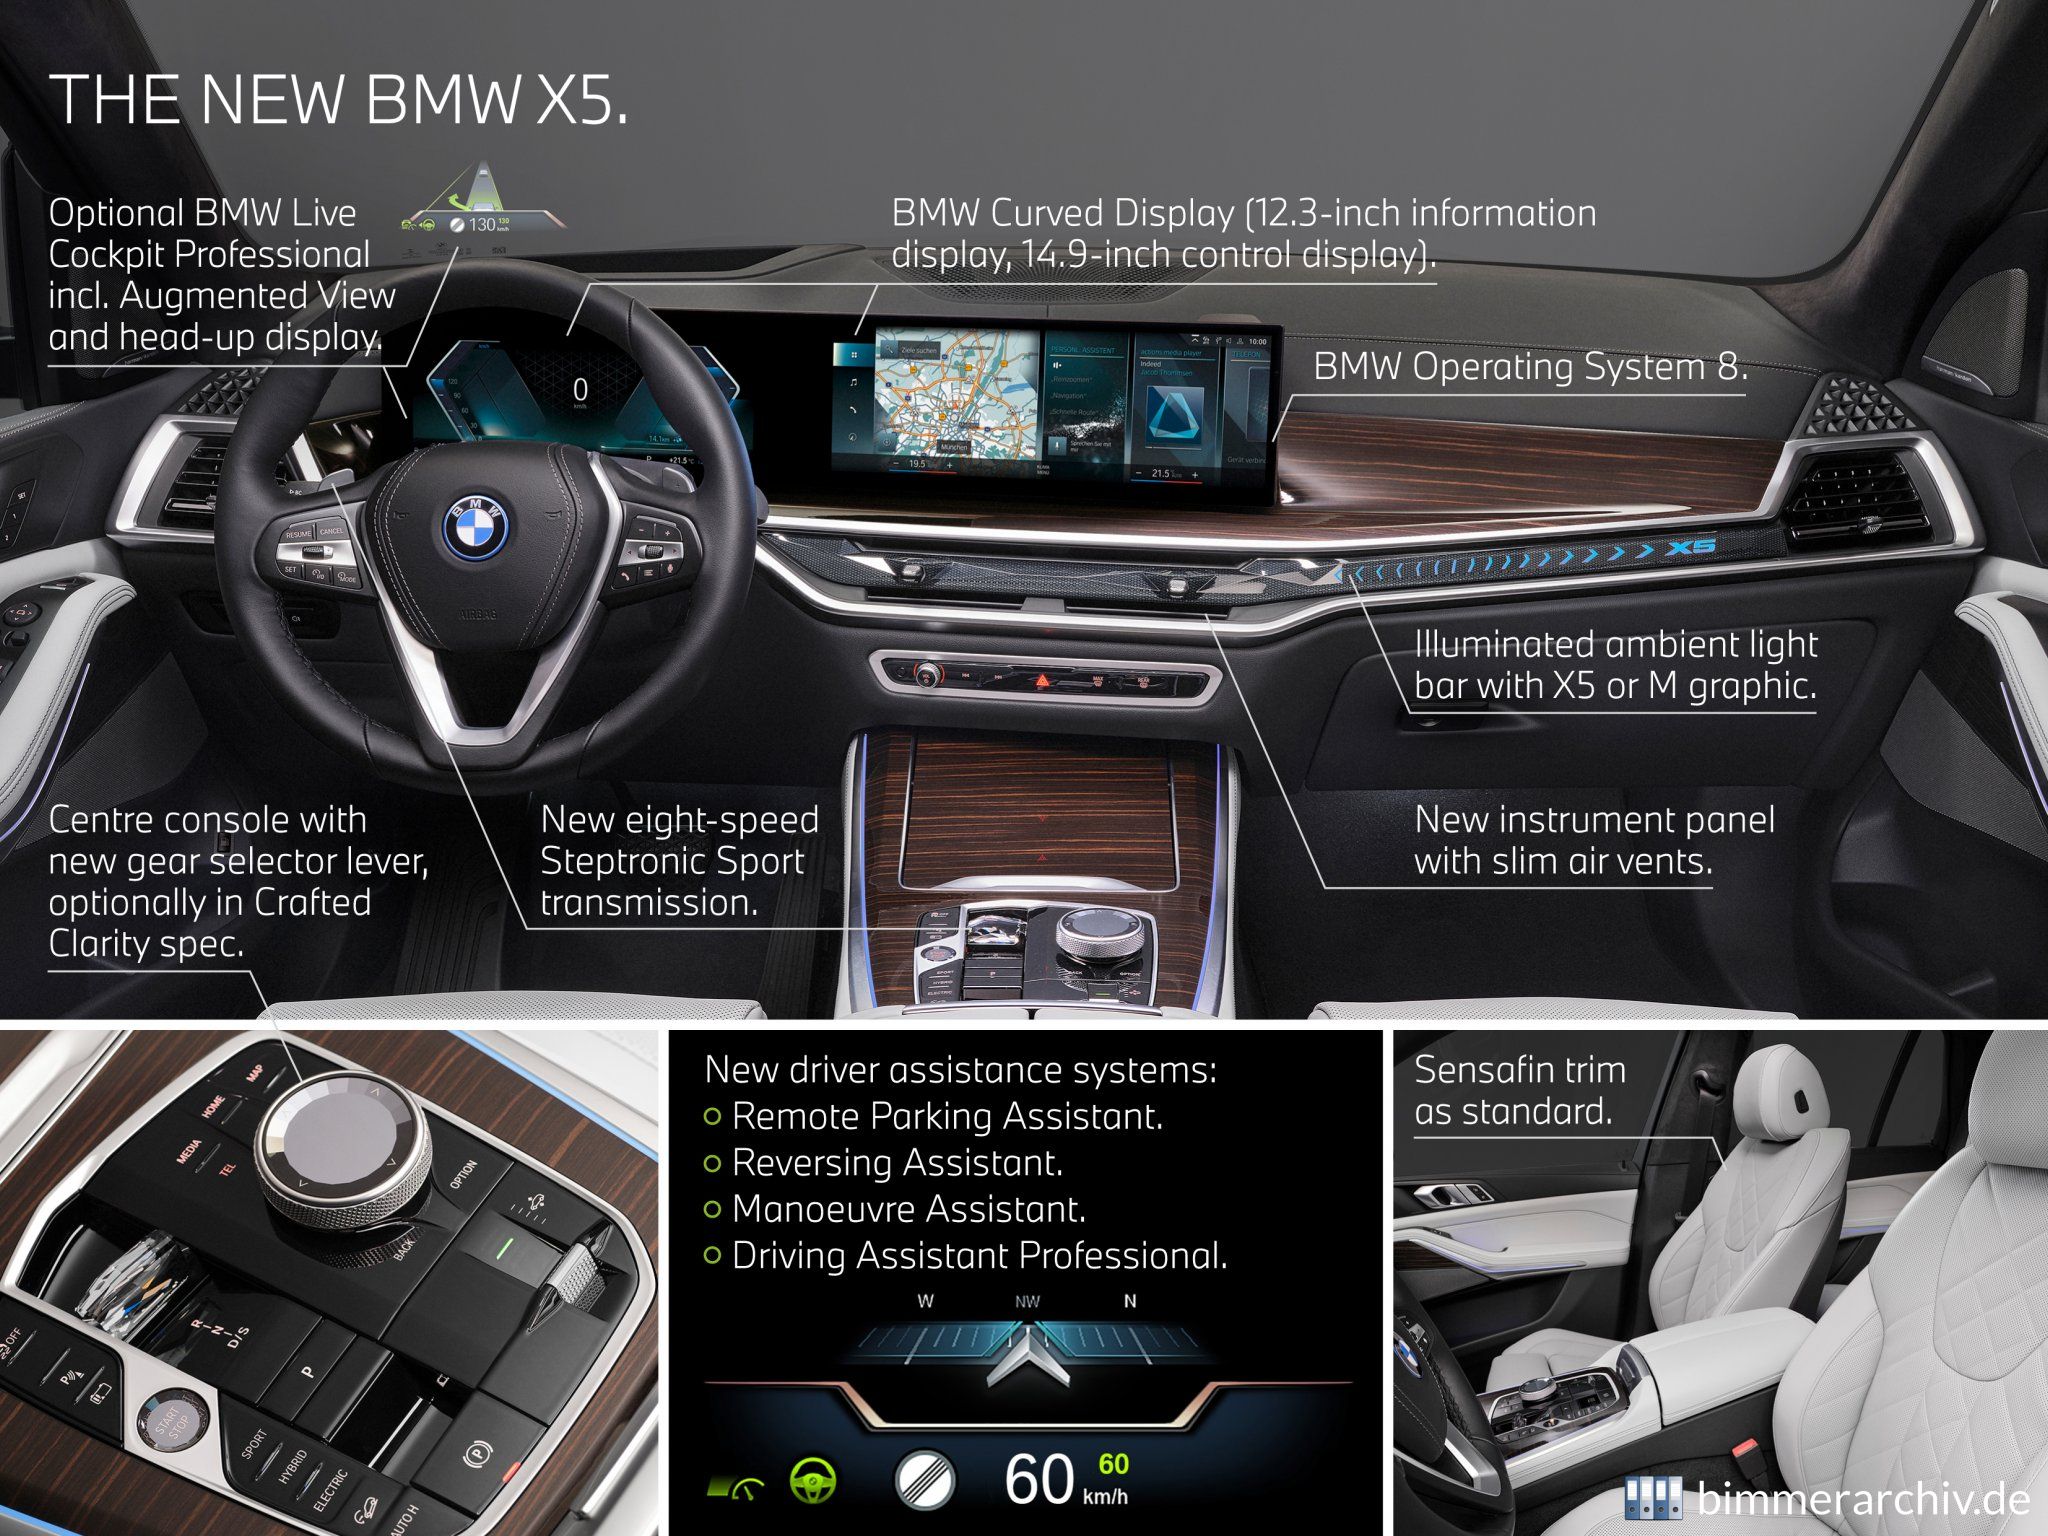 BMW X5 xDrive50e - Highlights